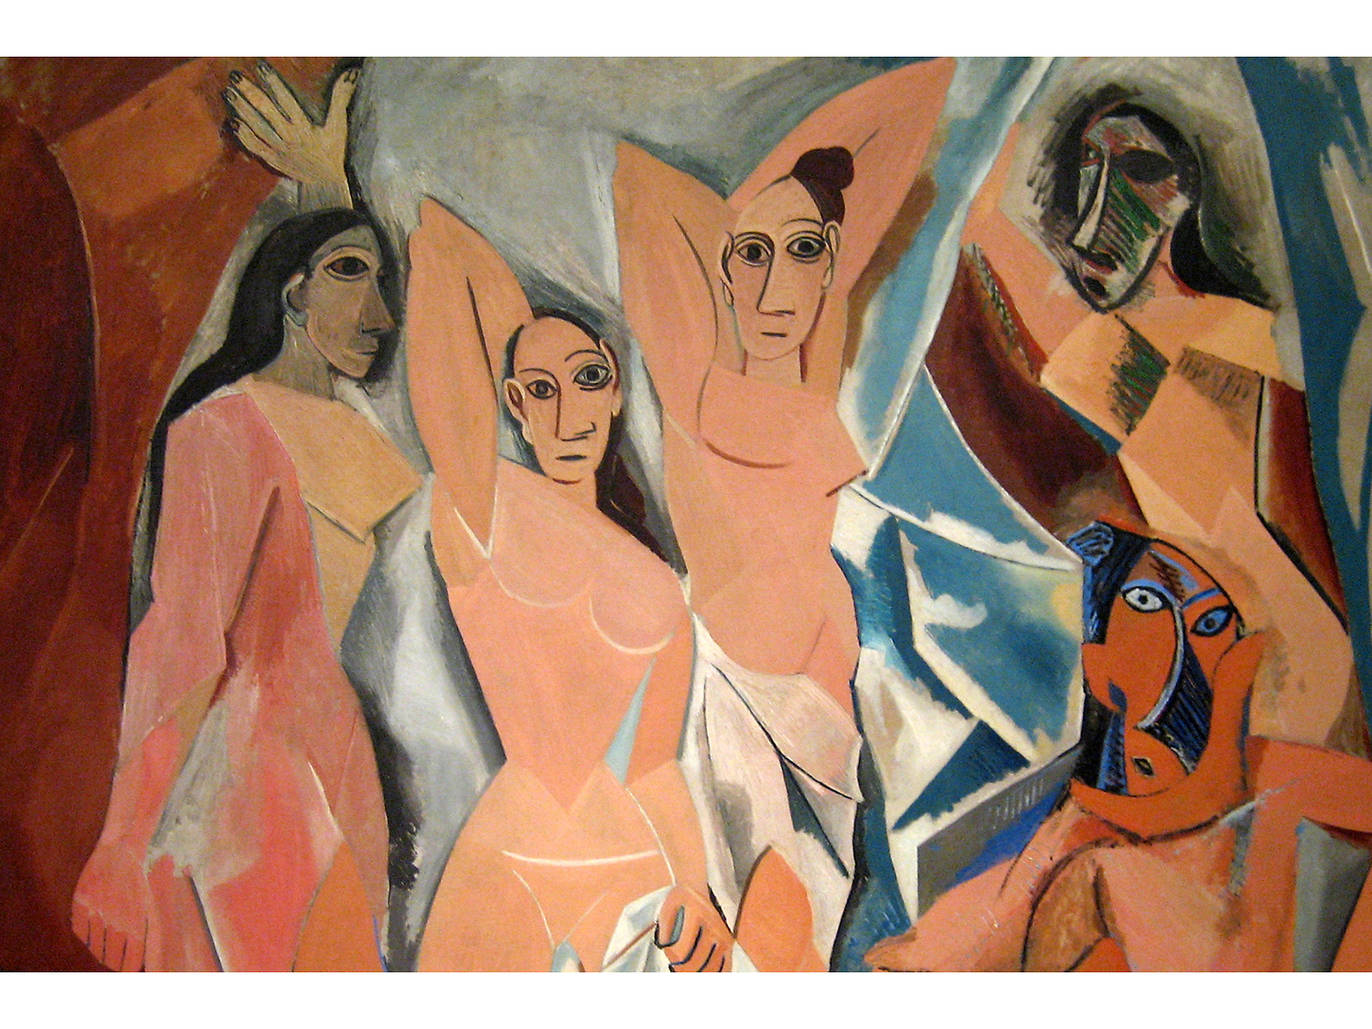 Les Demoiselles d'Avignon Pablo Picasso 1907